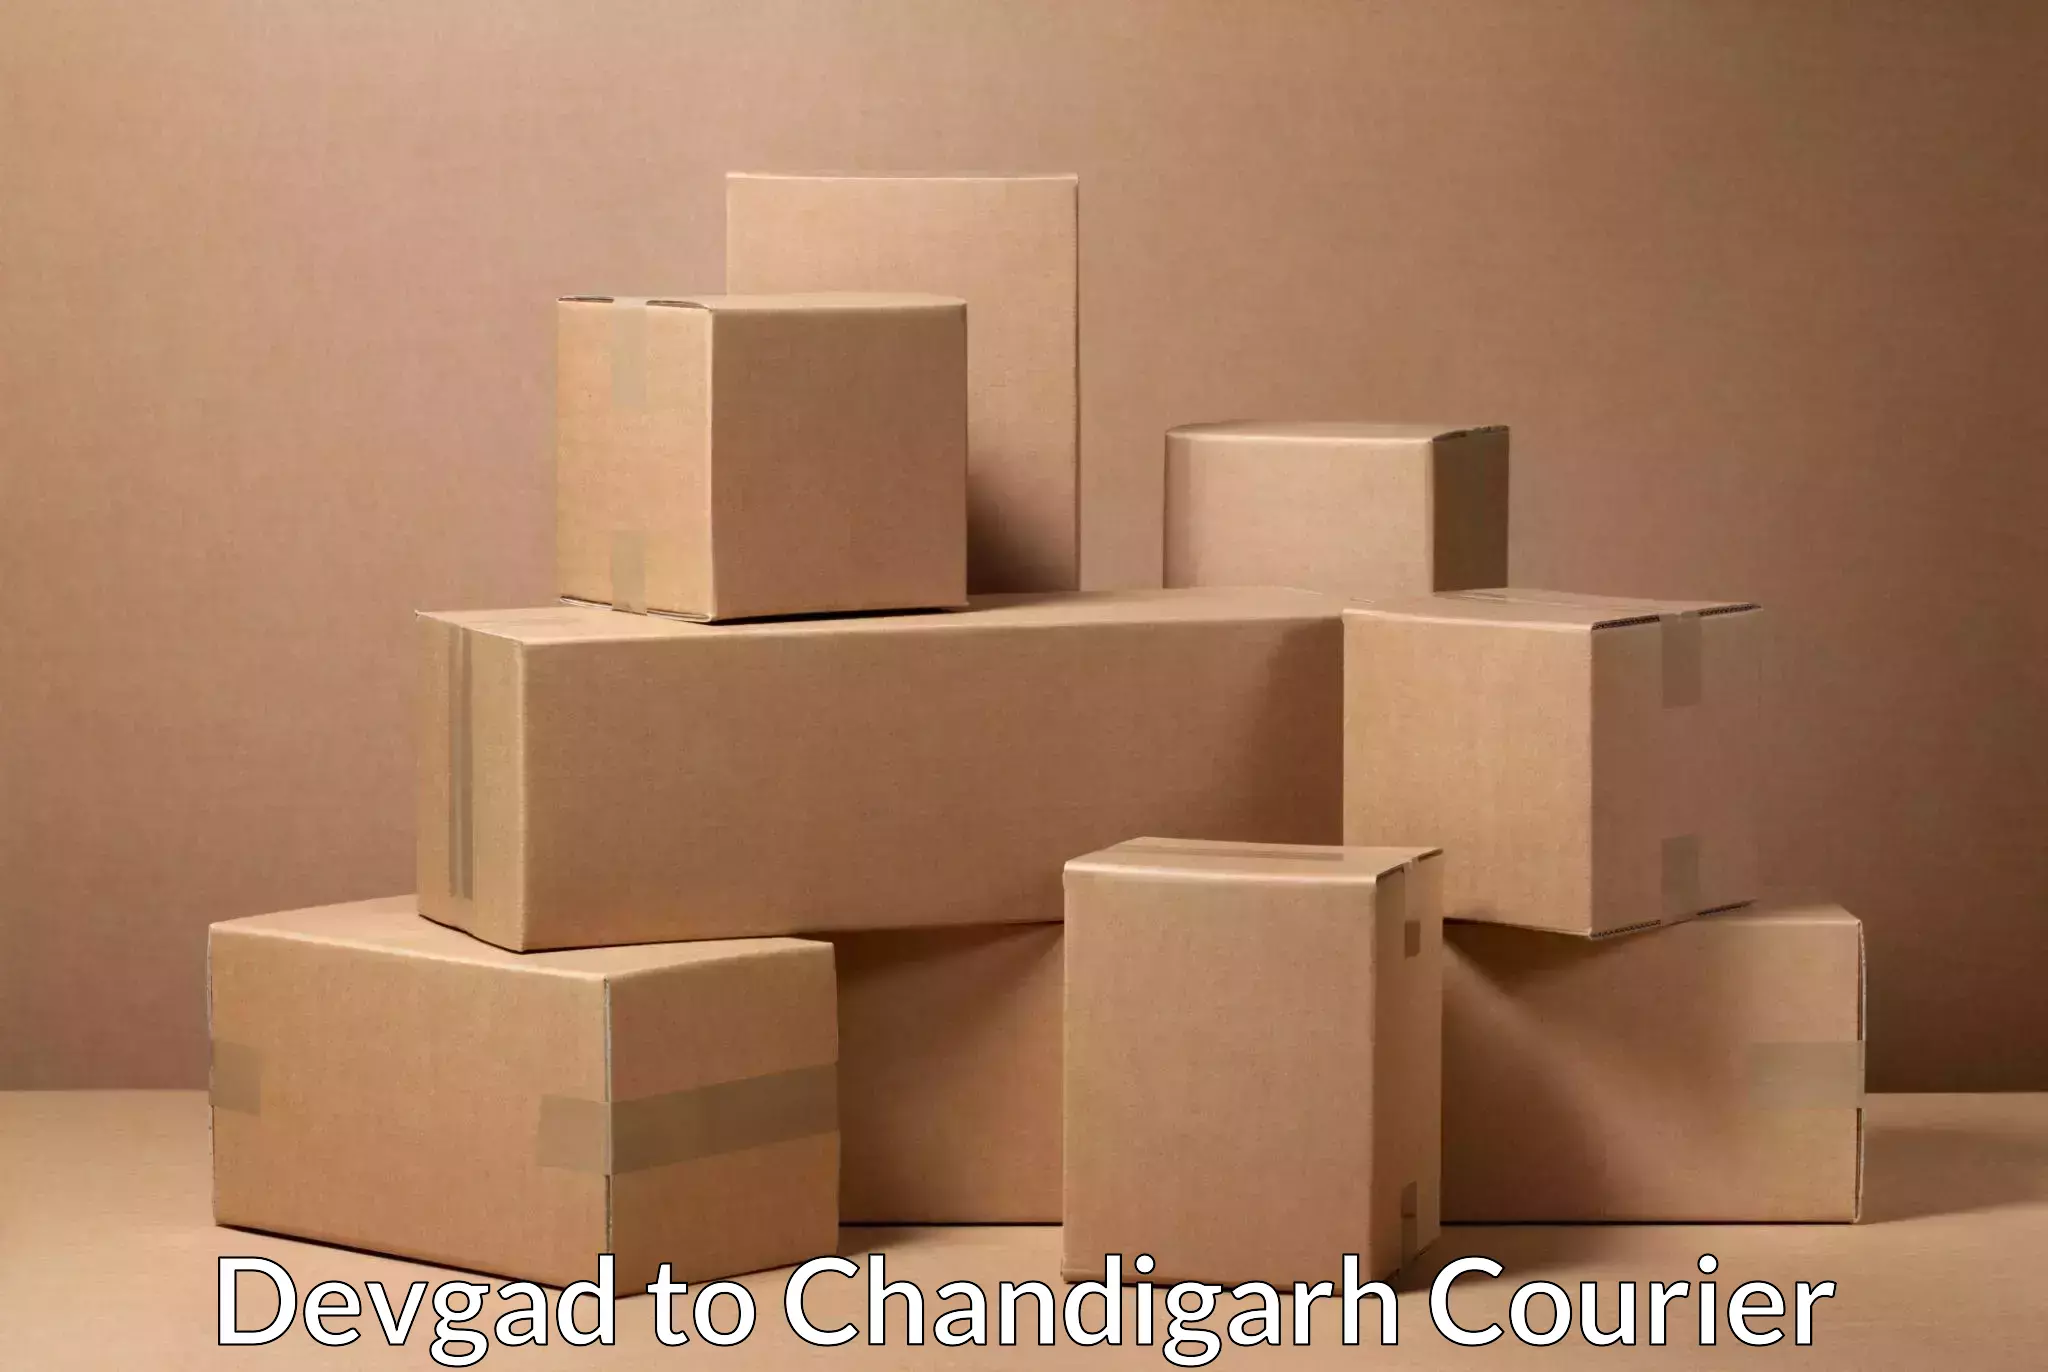 Urban courier service Devgad to Chandigarh